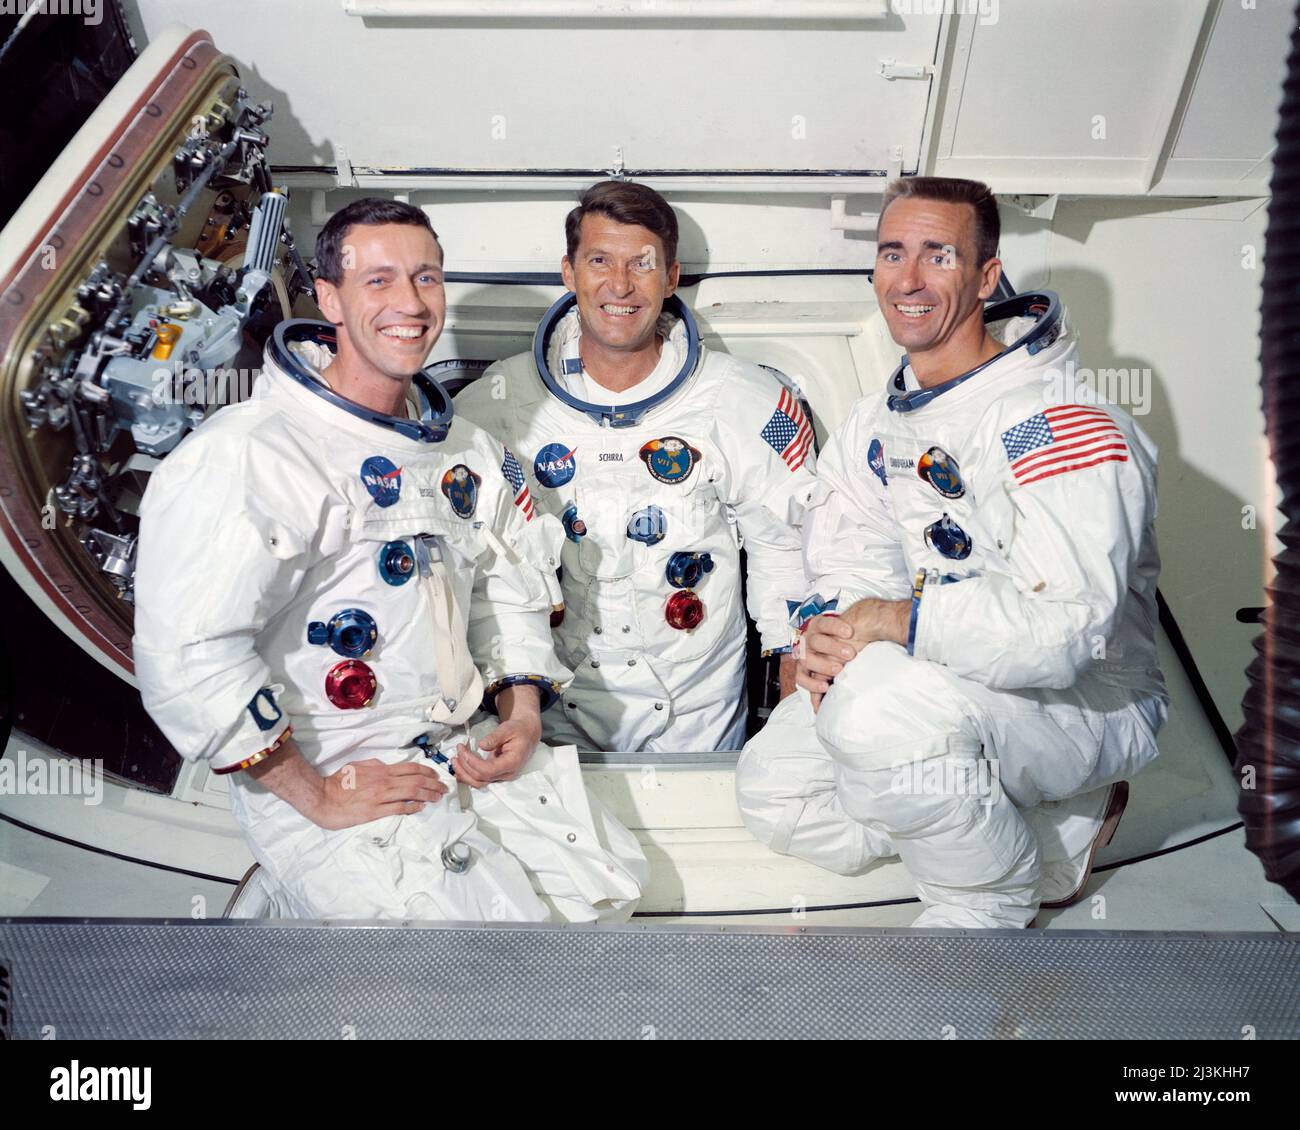 Il primo equipaggio della prima missione spaziale Apollo presidiata, Apollo 7. Da sinistra a destra ci sono: Pilota del modulo di comando, Don Eisele, comandante, Walter Schirra e pilota del modulo Lunar, Walter Cunningham. La fotografia è stata scattata all'interno della stanza Bianca, fissata al braccio di accesso dell'equipaggio. Da qui gli astronauti entrano nella navicella spaziale. Foto Stock